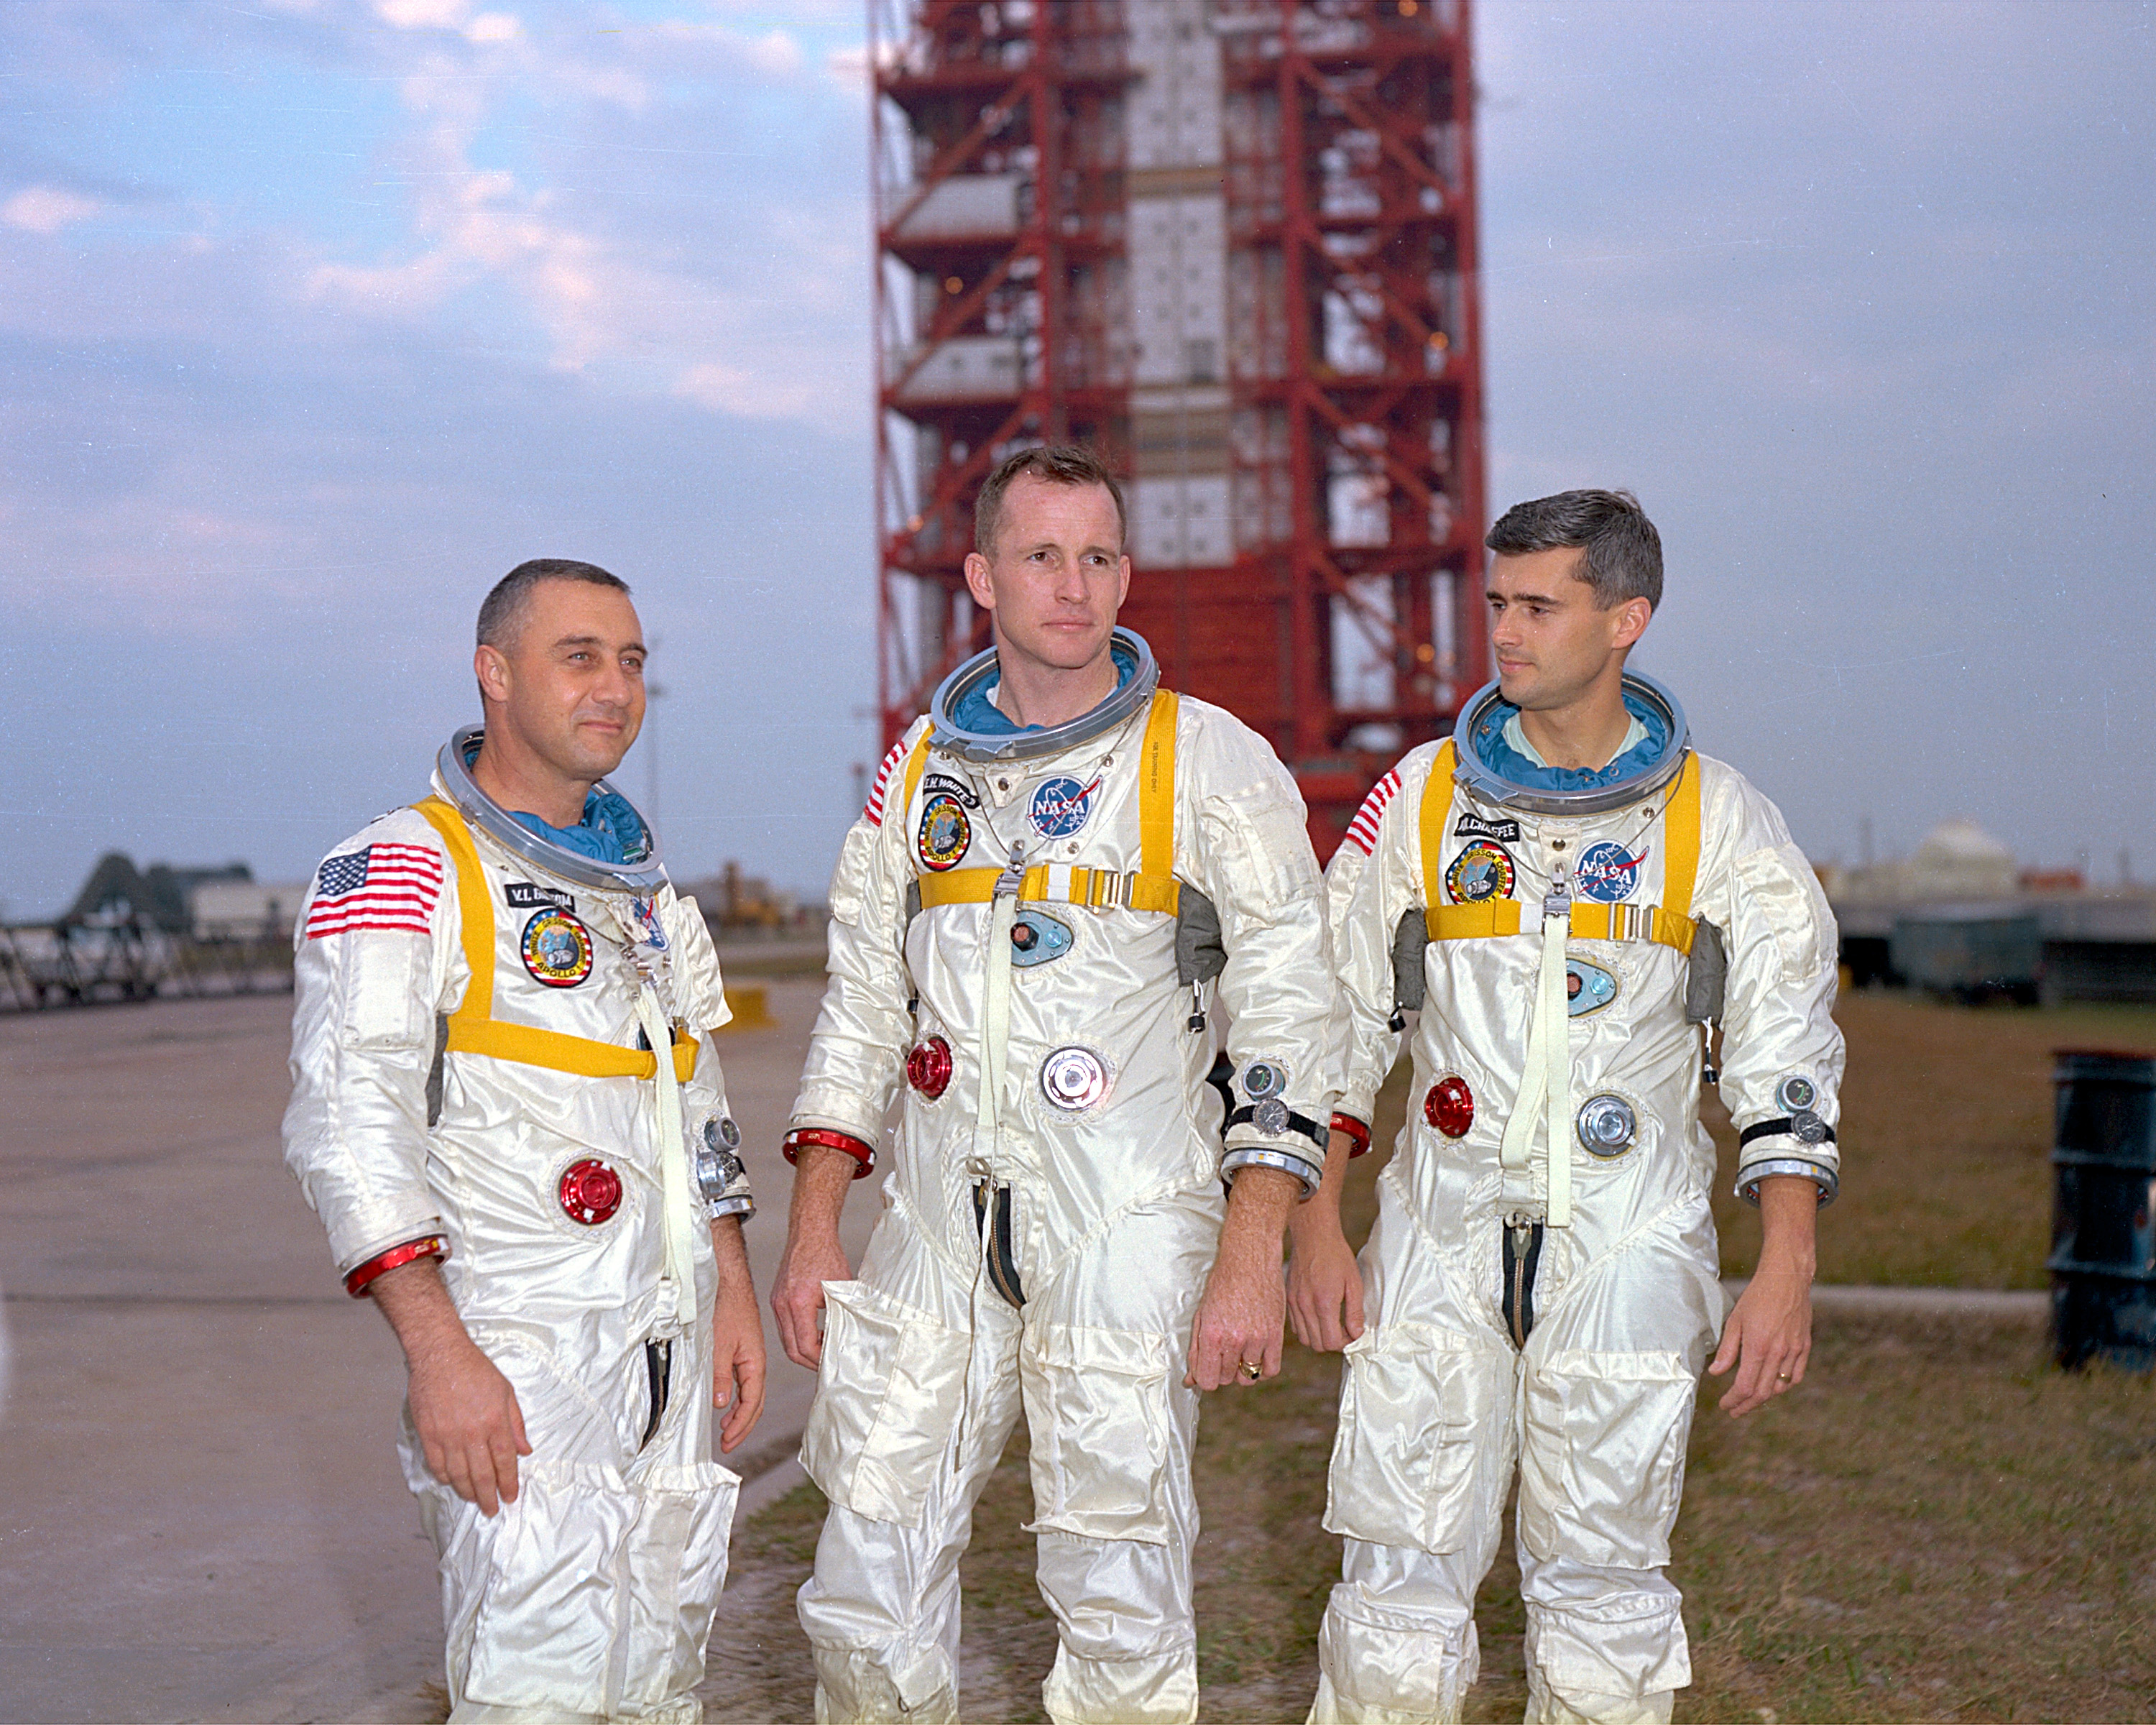 Załoga Apollo 1, od lewej: Grissom, White, Chaffee.